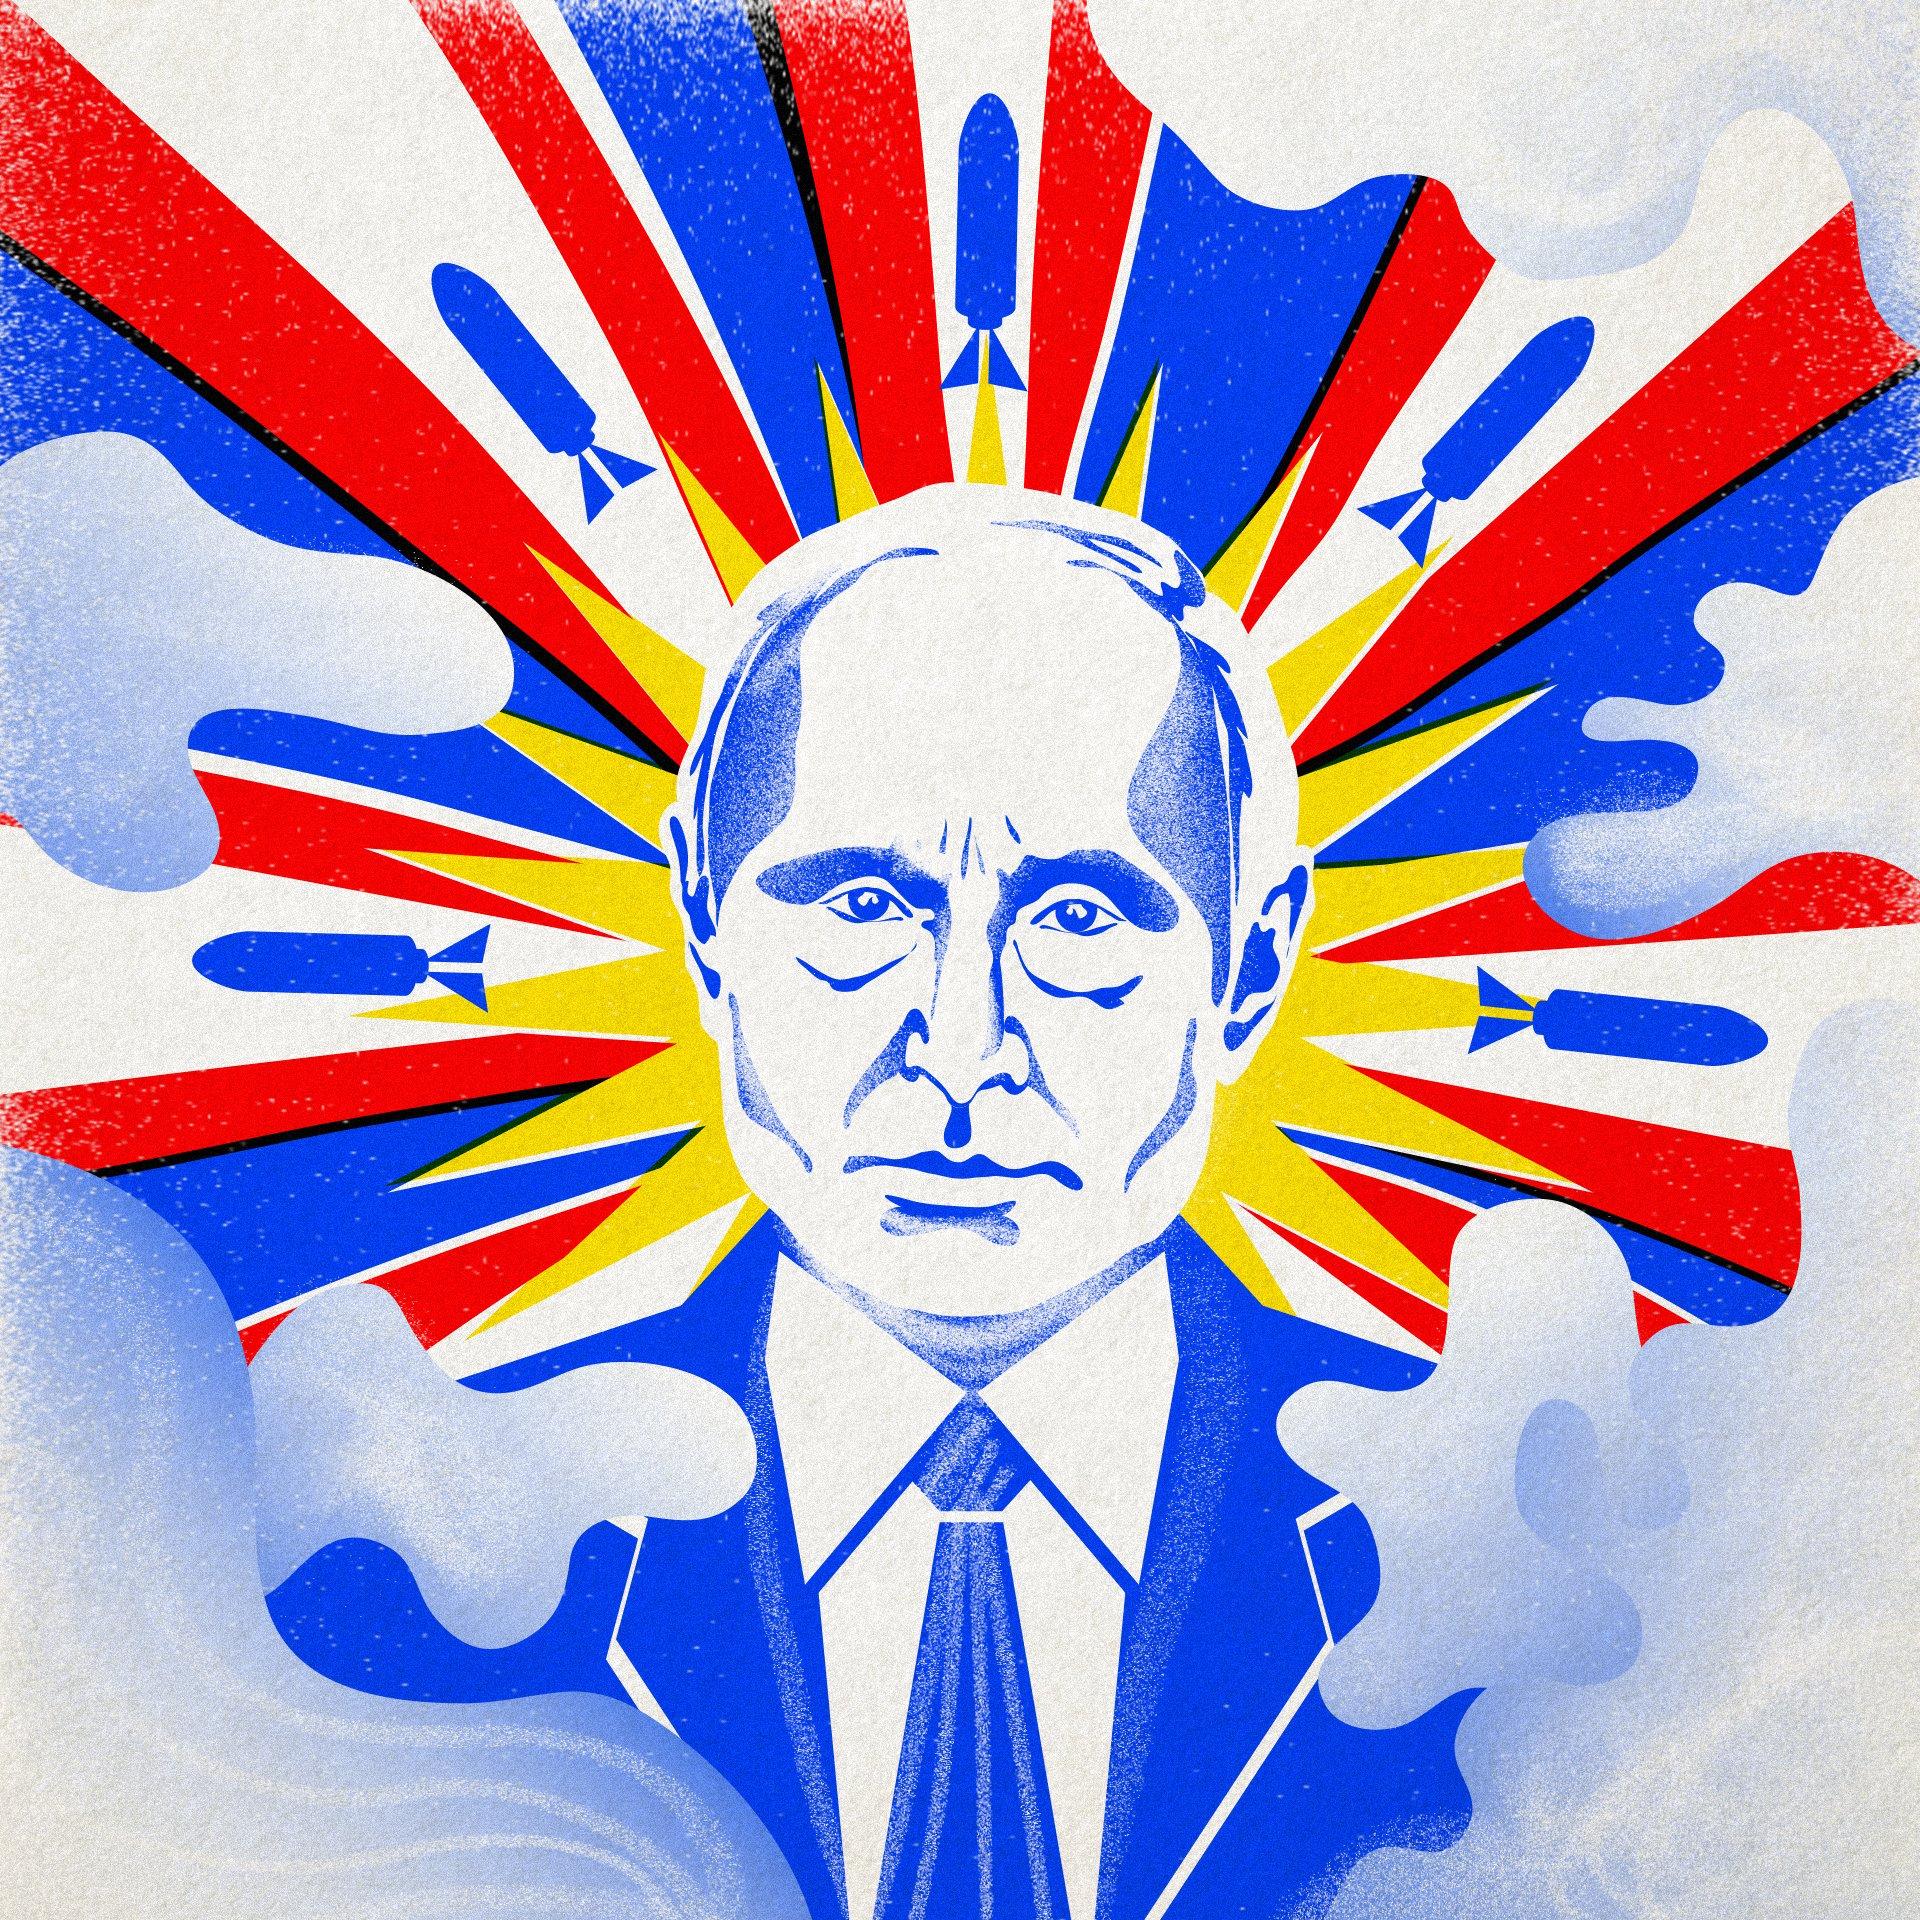 Grafika: niebeski Putin wyłaniający się z chmur w promieniach w kolorach rosyjskiej flagi, wśród rakiet i wybuchów